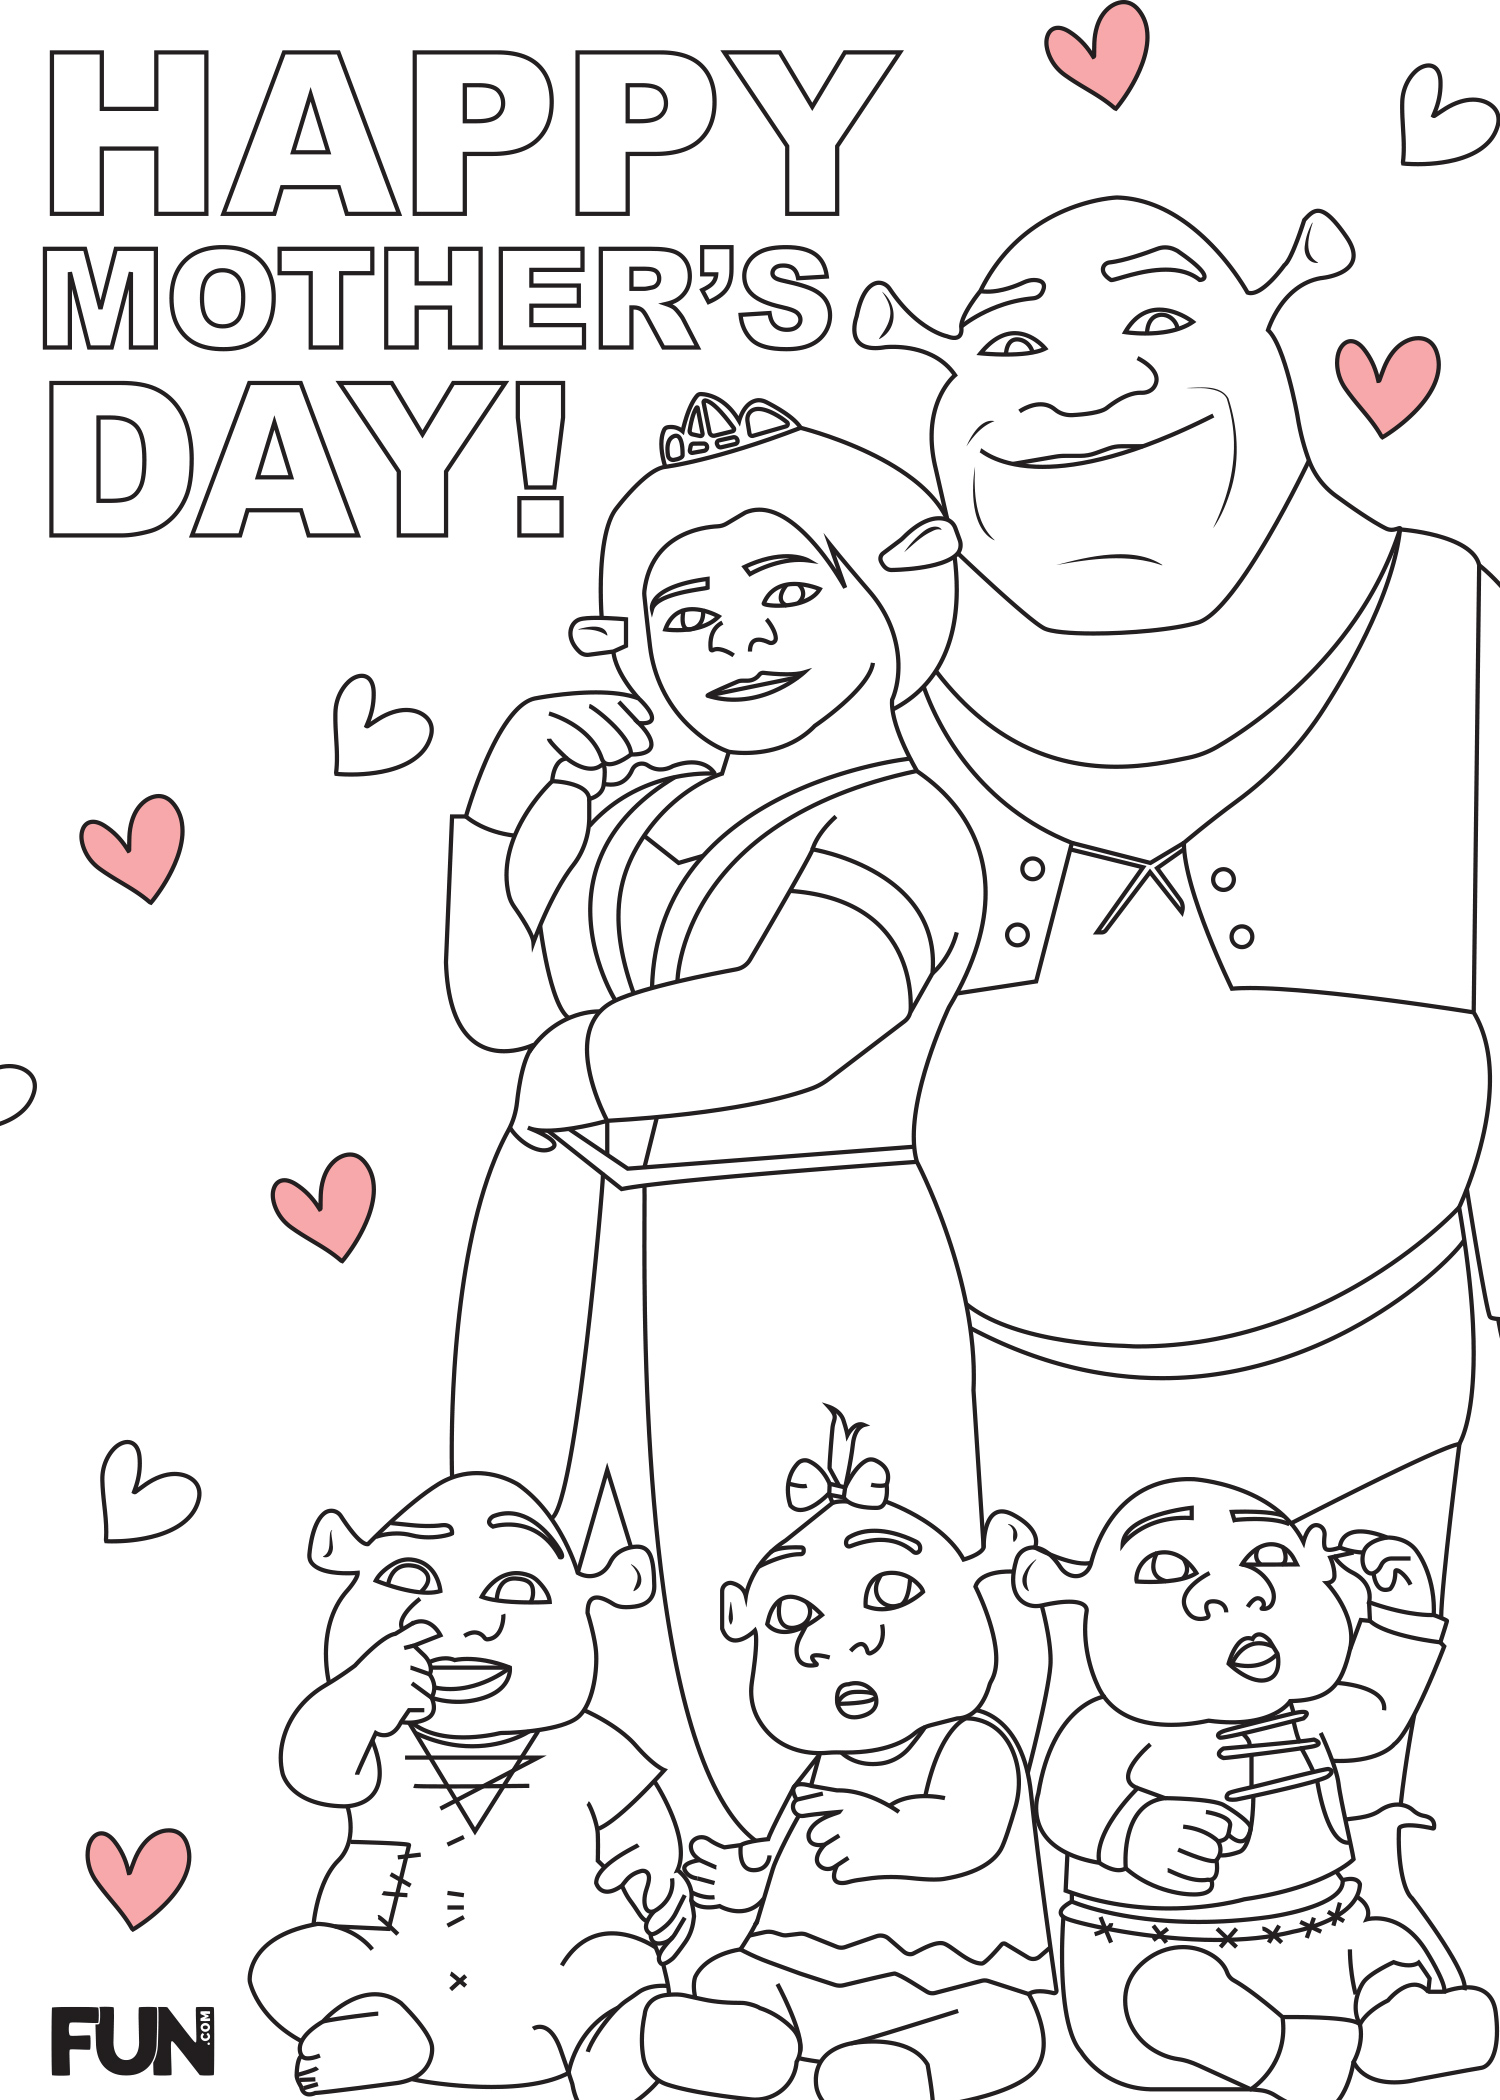 Shrek Mother's Day Card